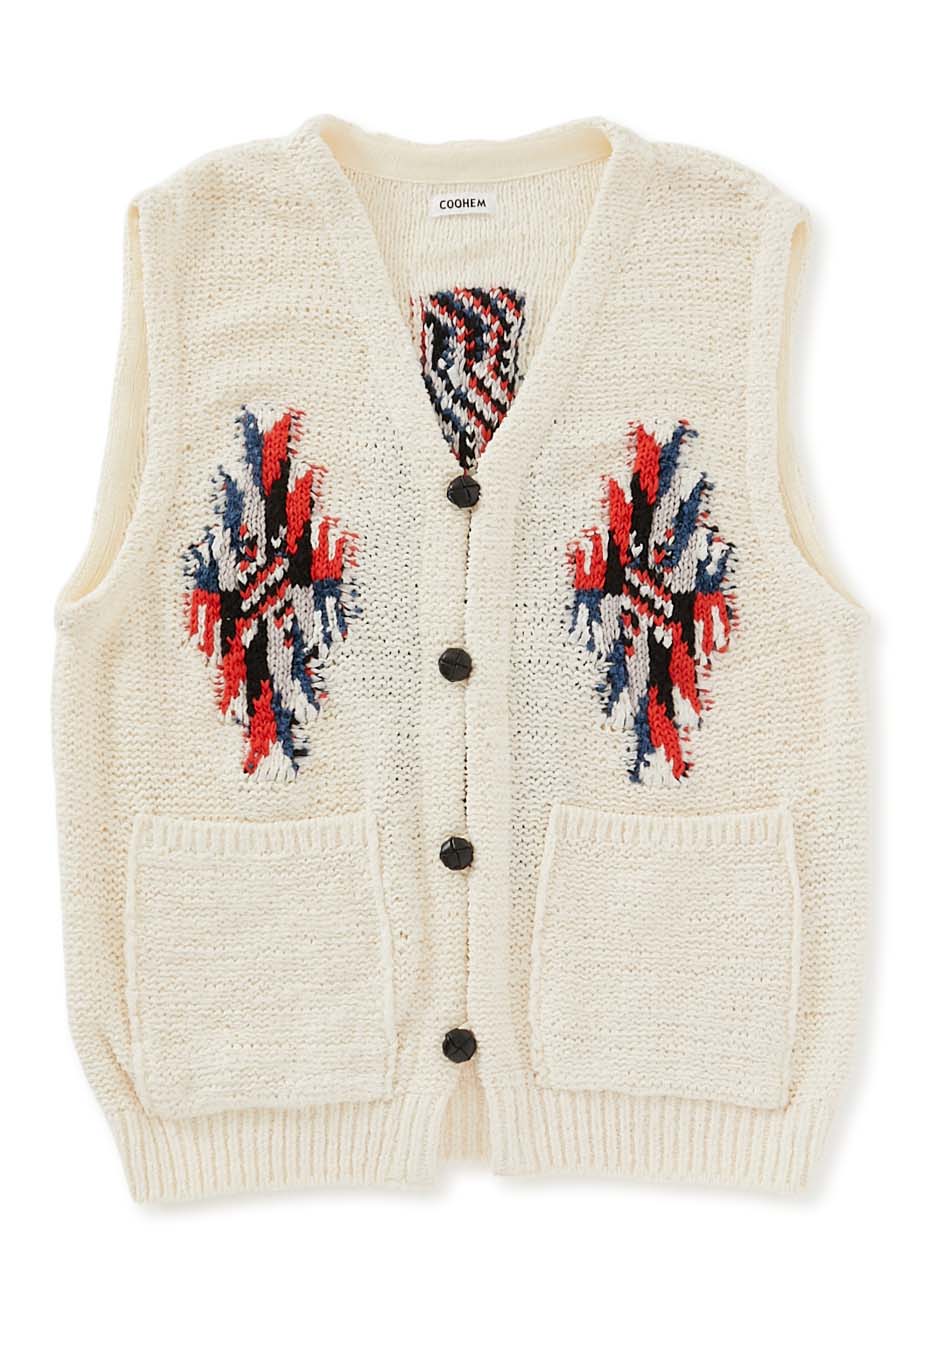 COOHEM|Best|COOHEM Chimayo Tweed Knit Vest 13-232-005